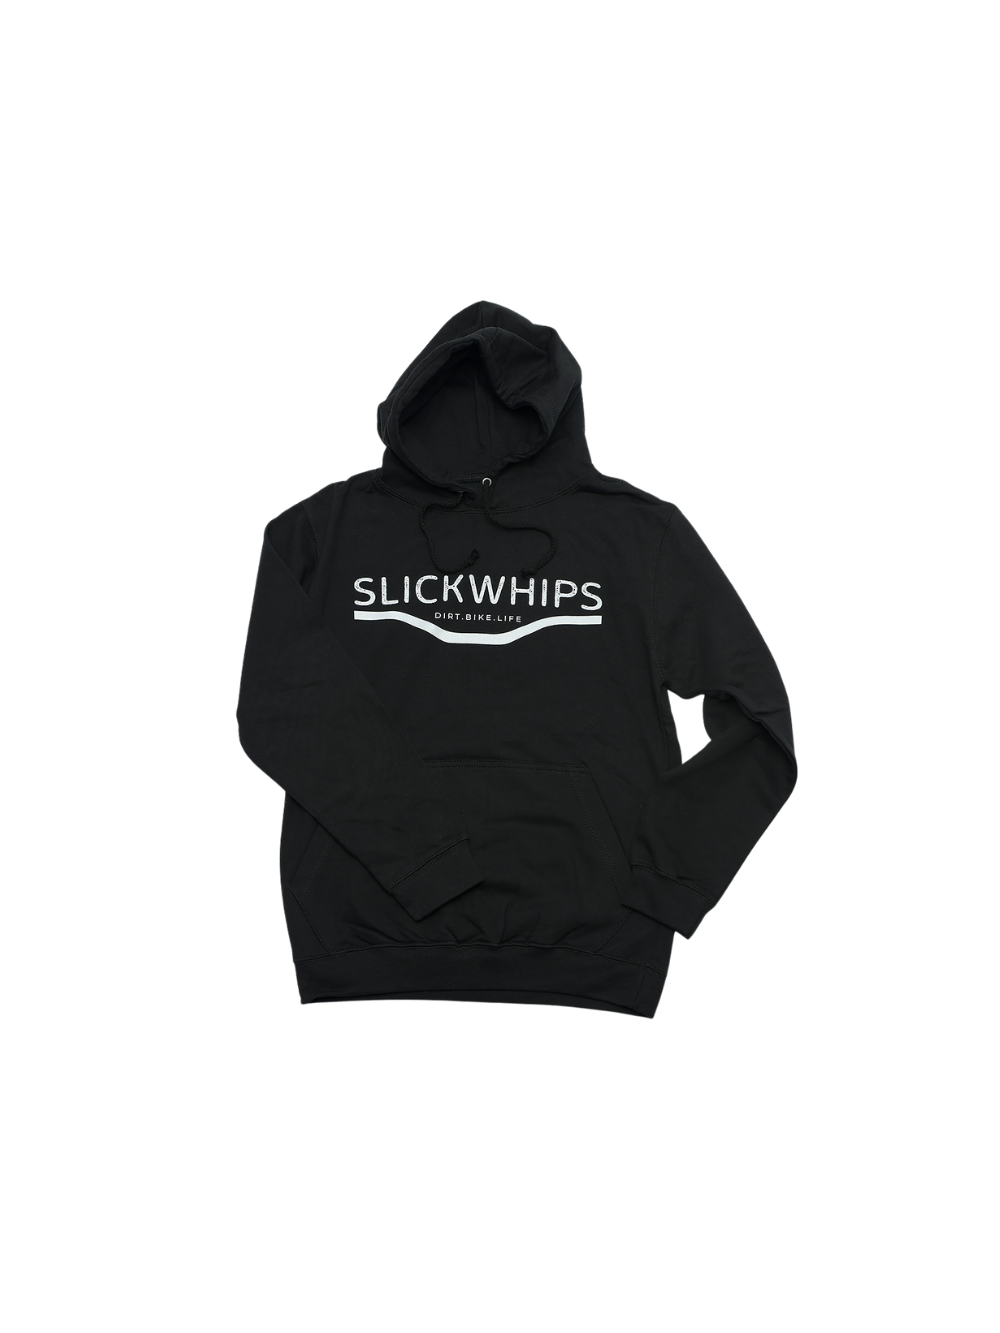 Slickwhips Adults Ride Premium Hoodie in Black